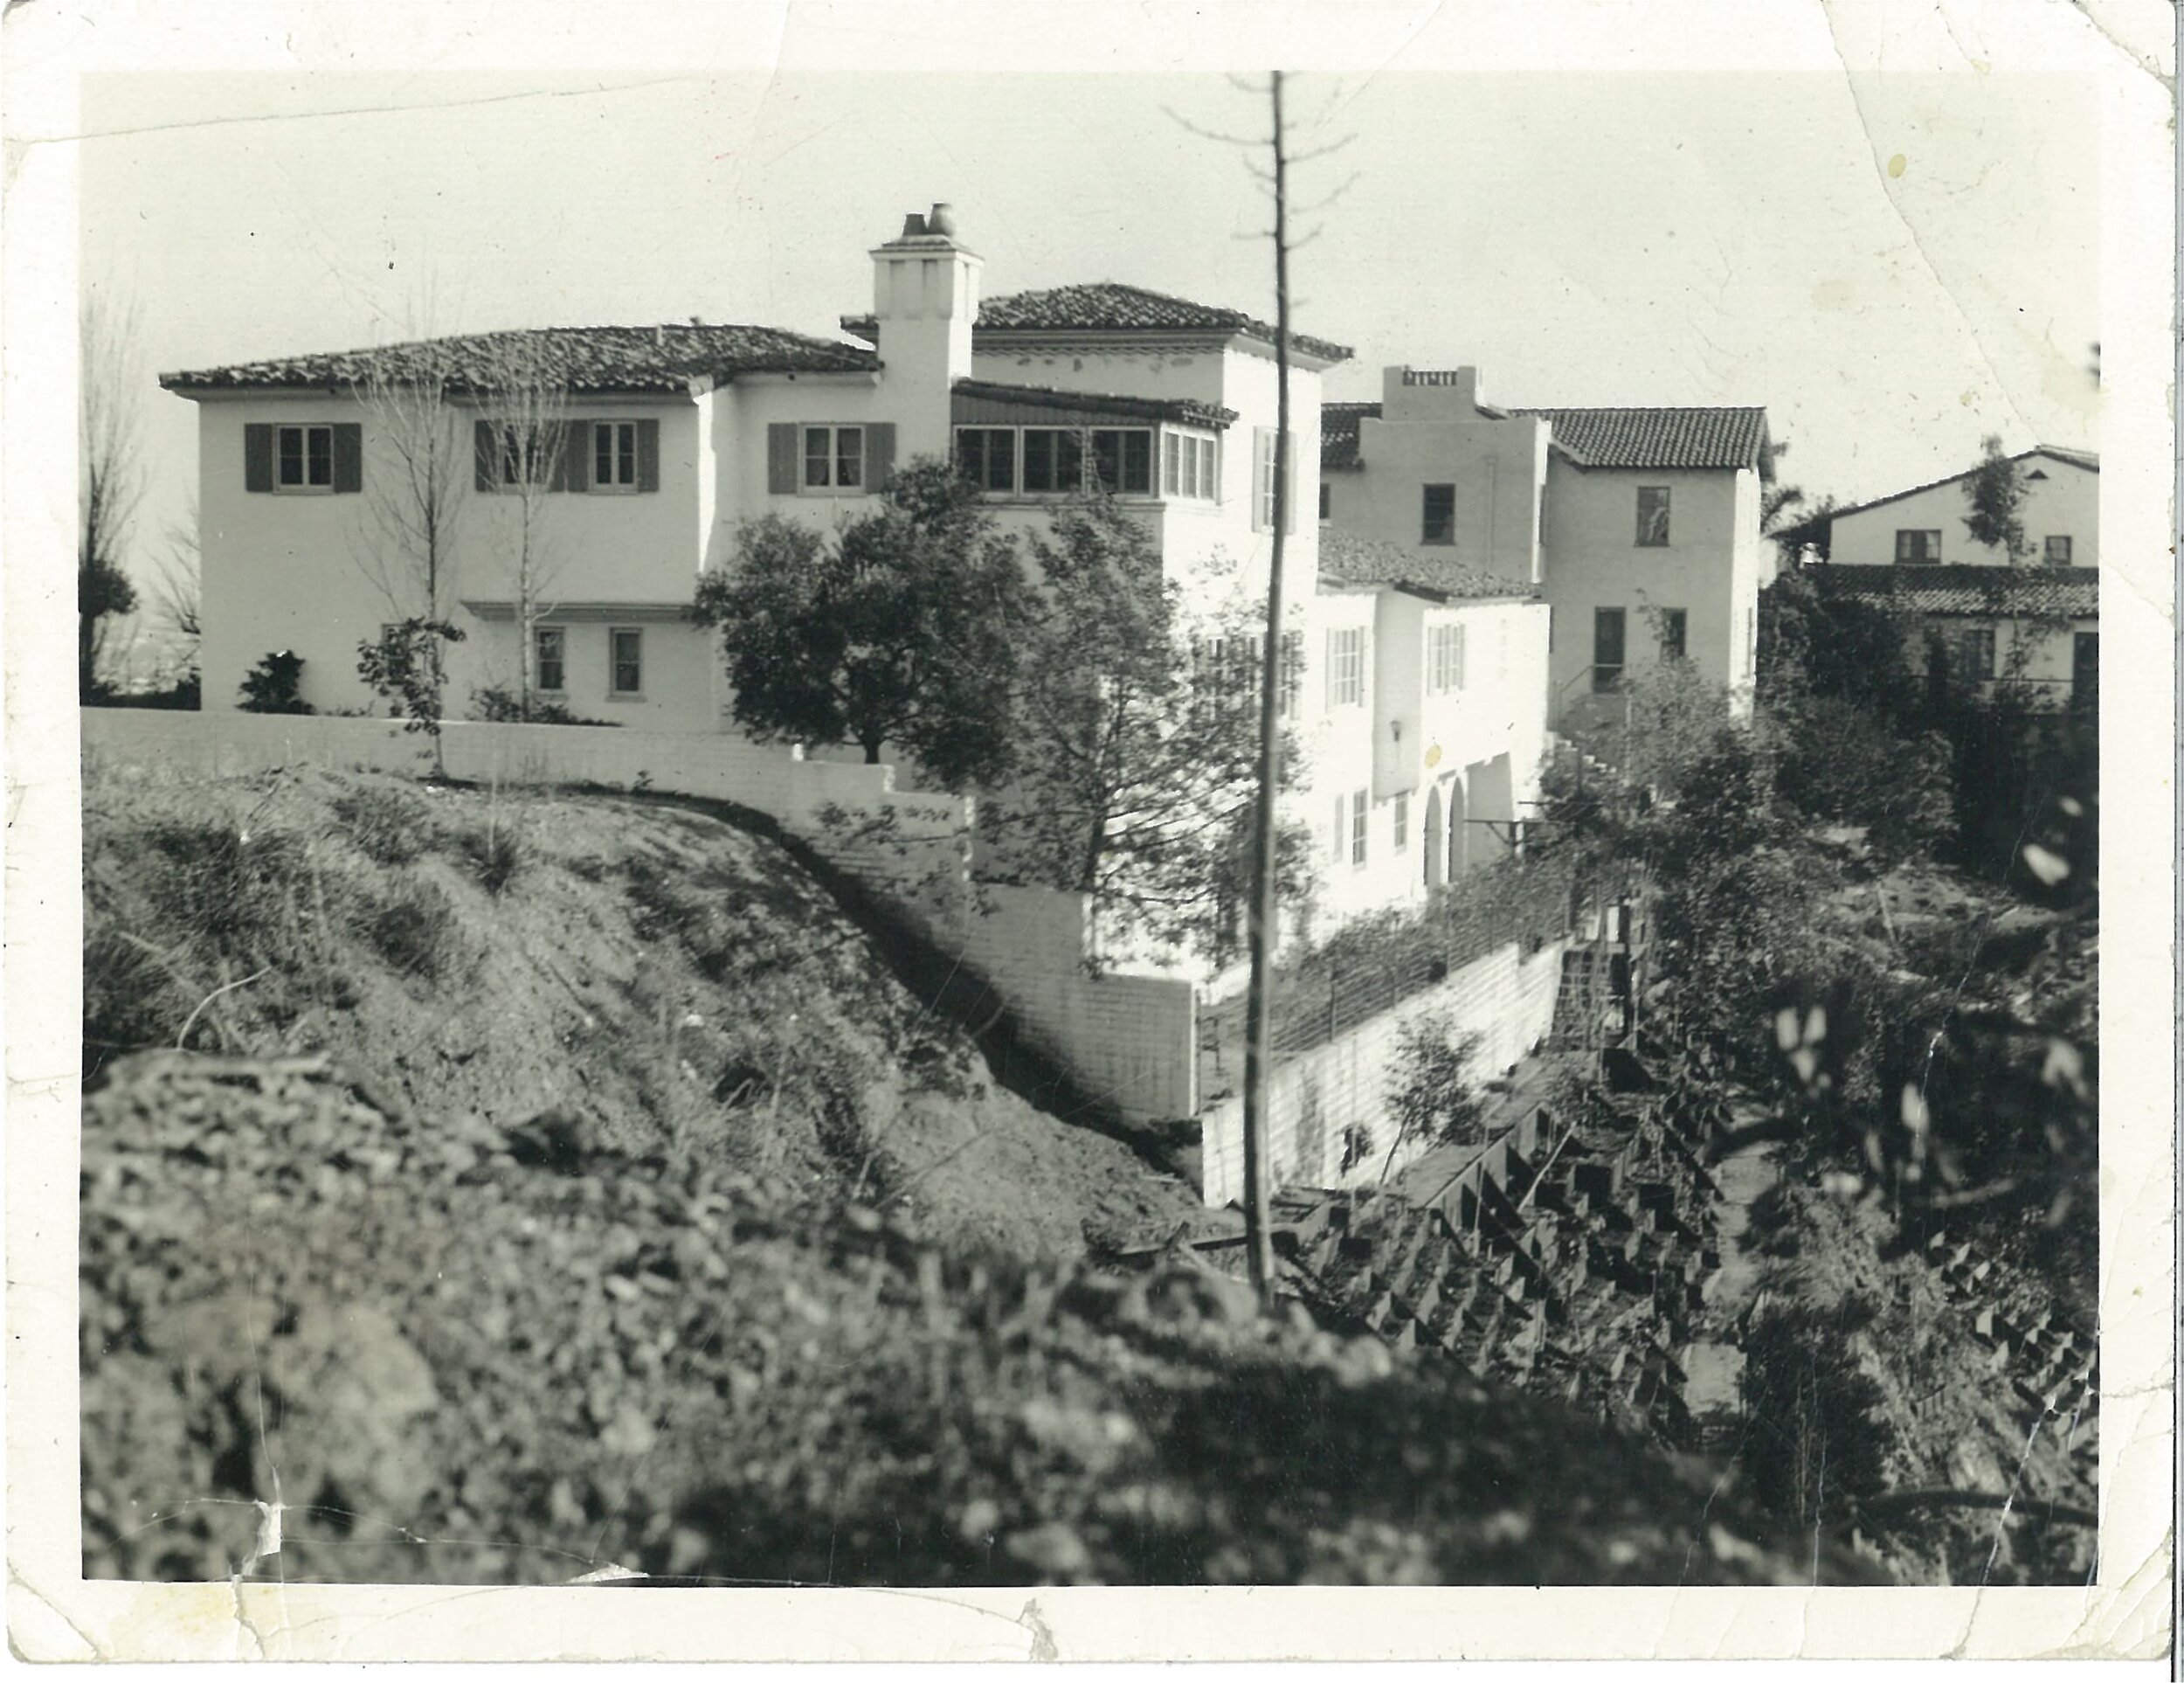 20-the-herriman-house-on-maravilla-seen-from-hillside.jpg